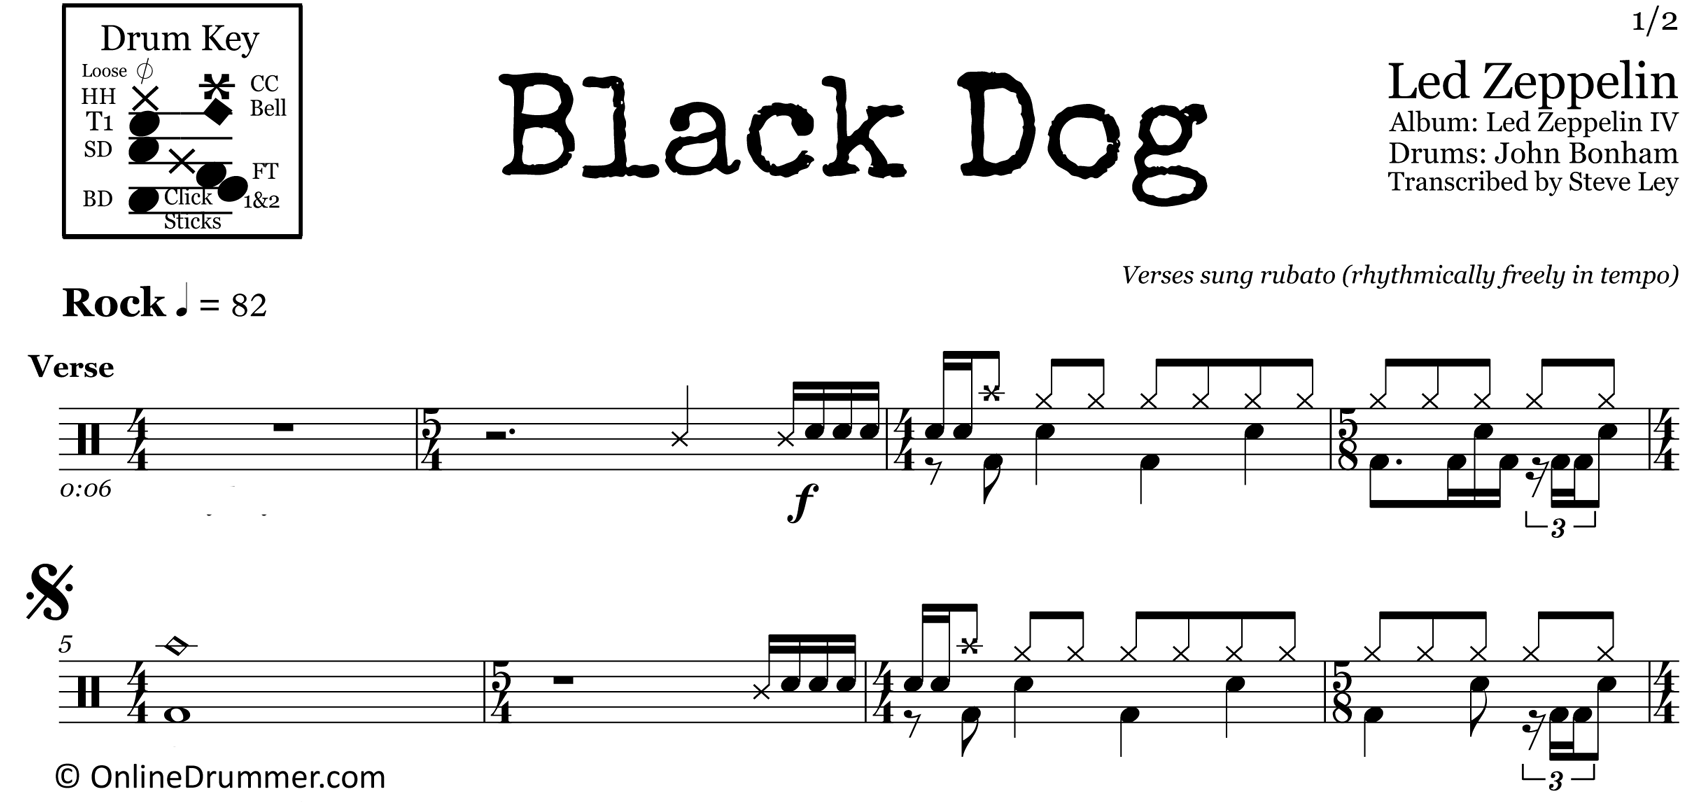 Black Dog - Led Zeppelin - Drum Sheet Music